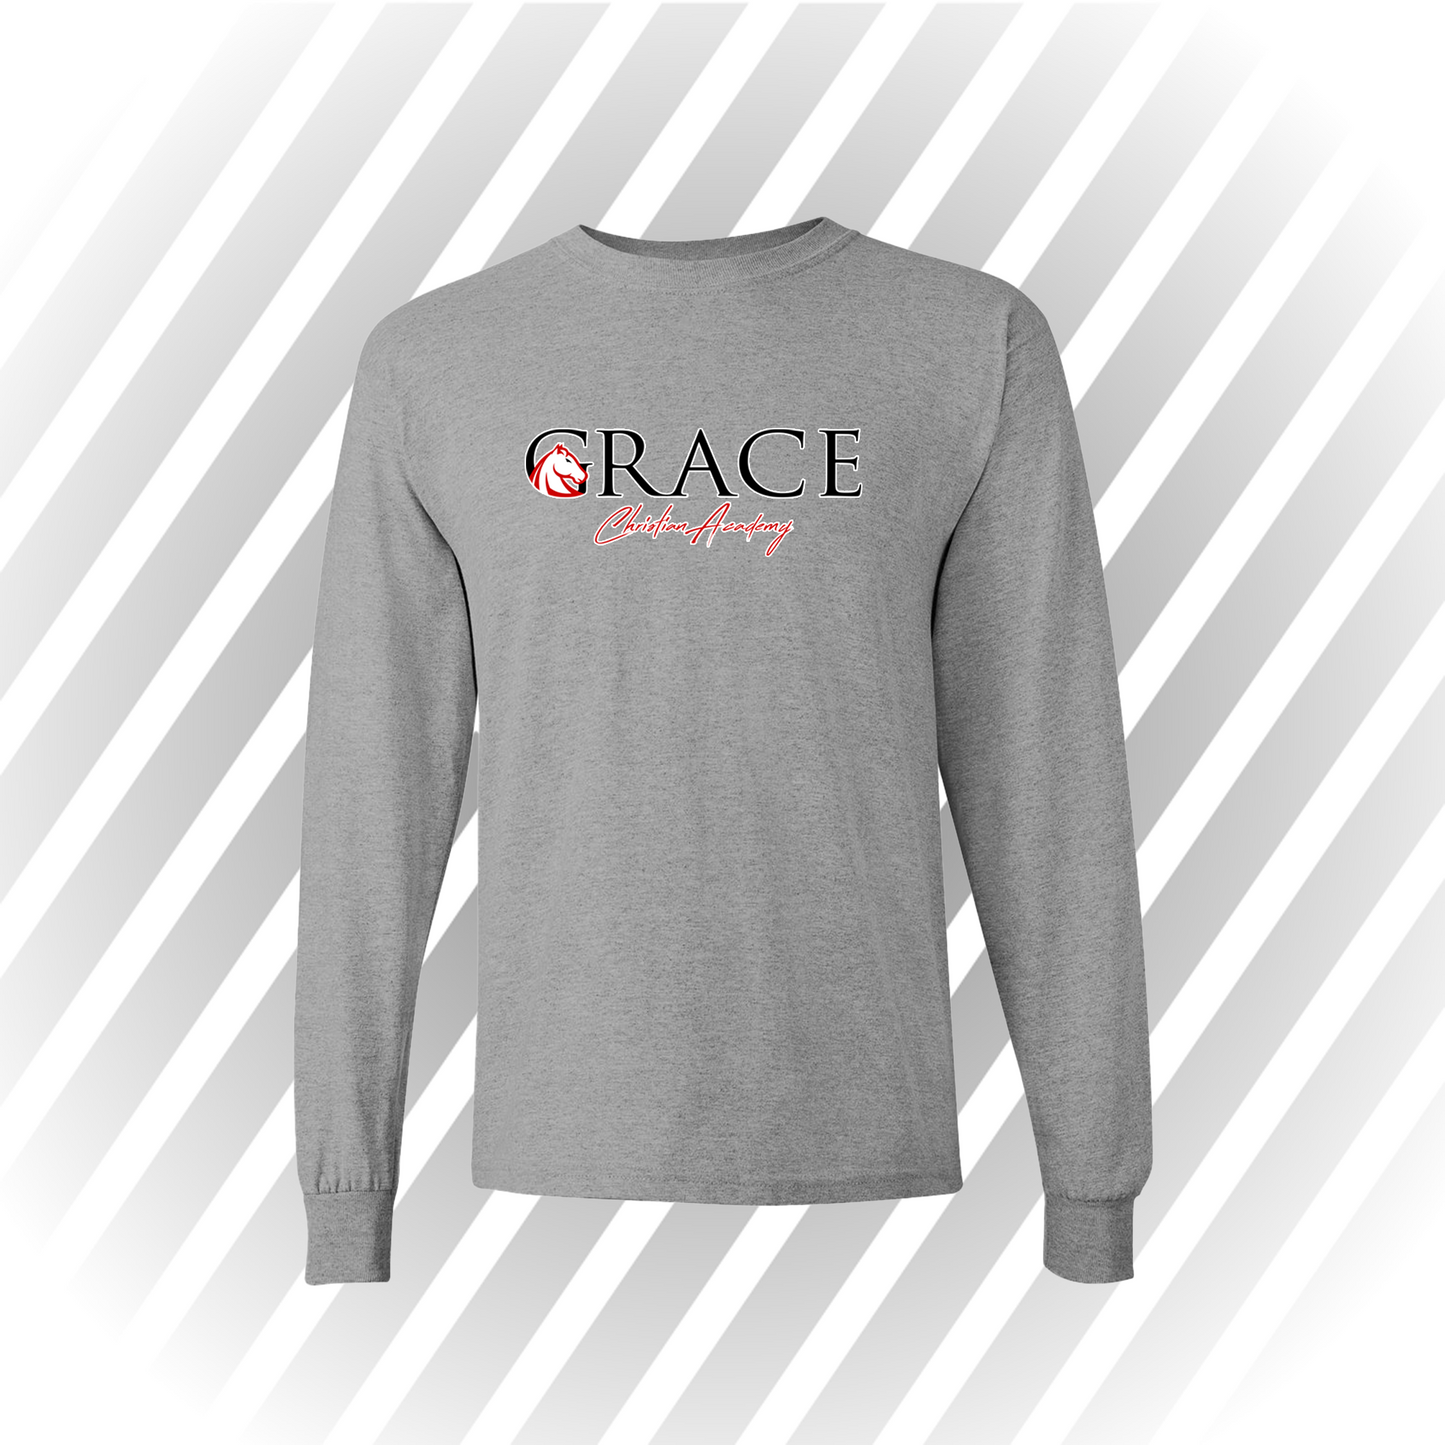 Grace Christian Academy - Long Sleeve